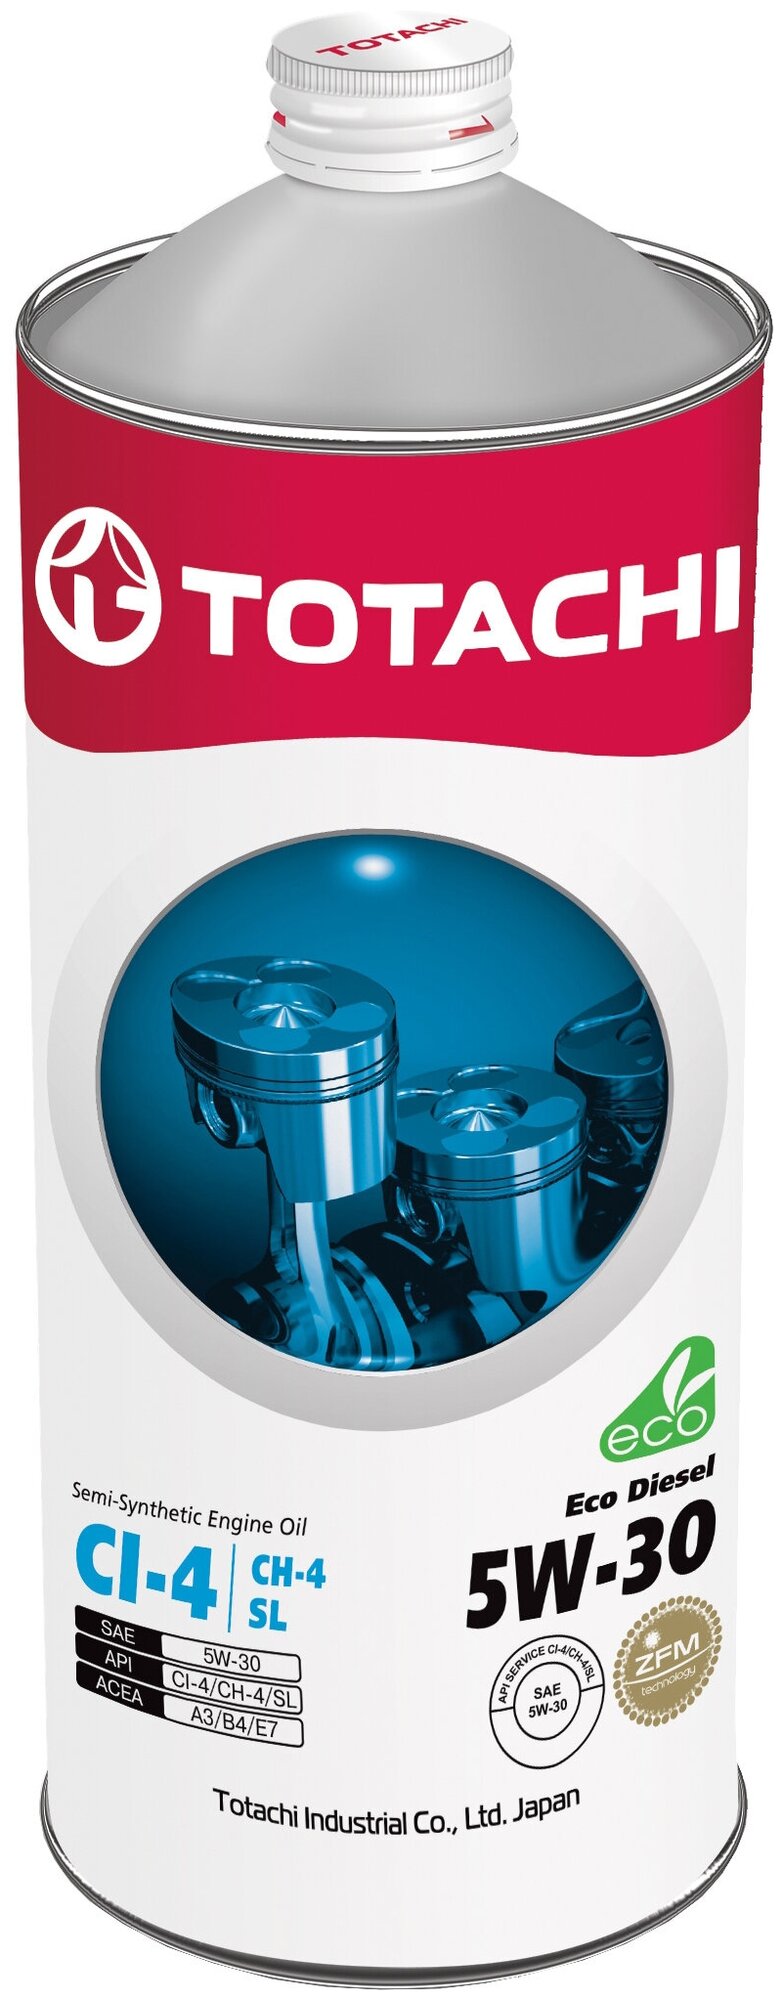 Масло моторное Totachi Eco Diesel 5W-30, Ck-4/сj-4/sn, полусинтетическое, 1 л .